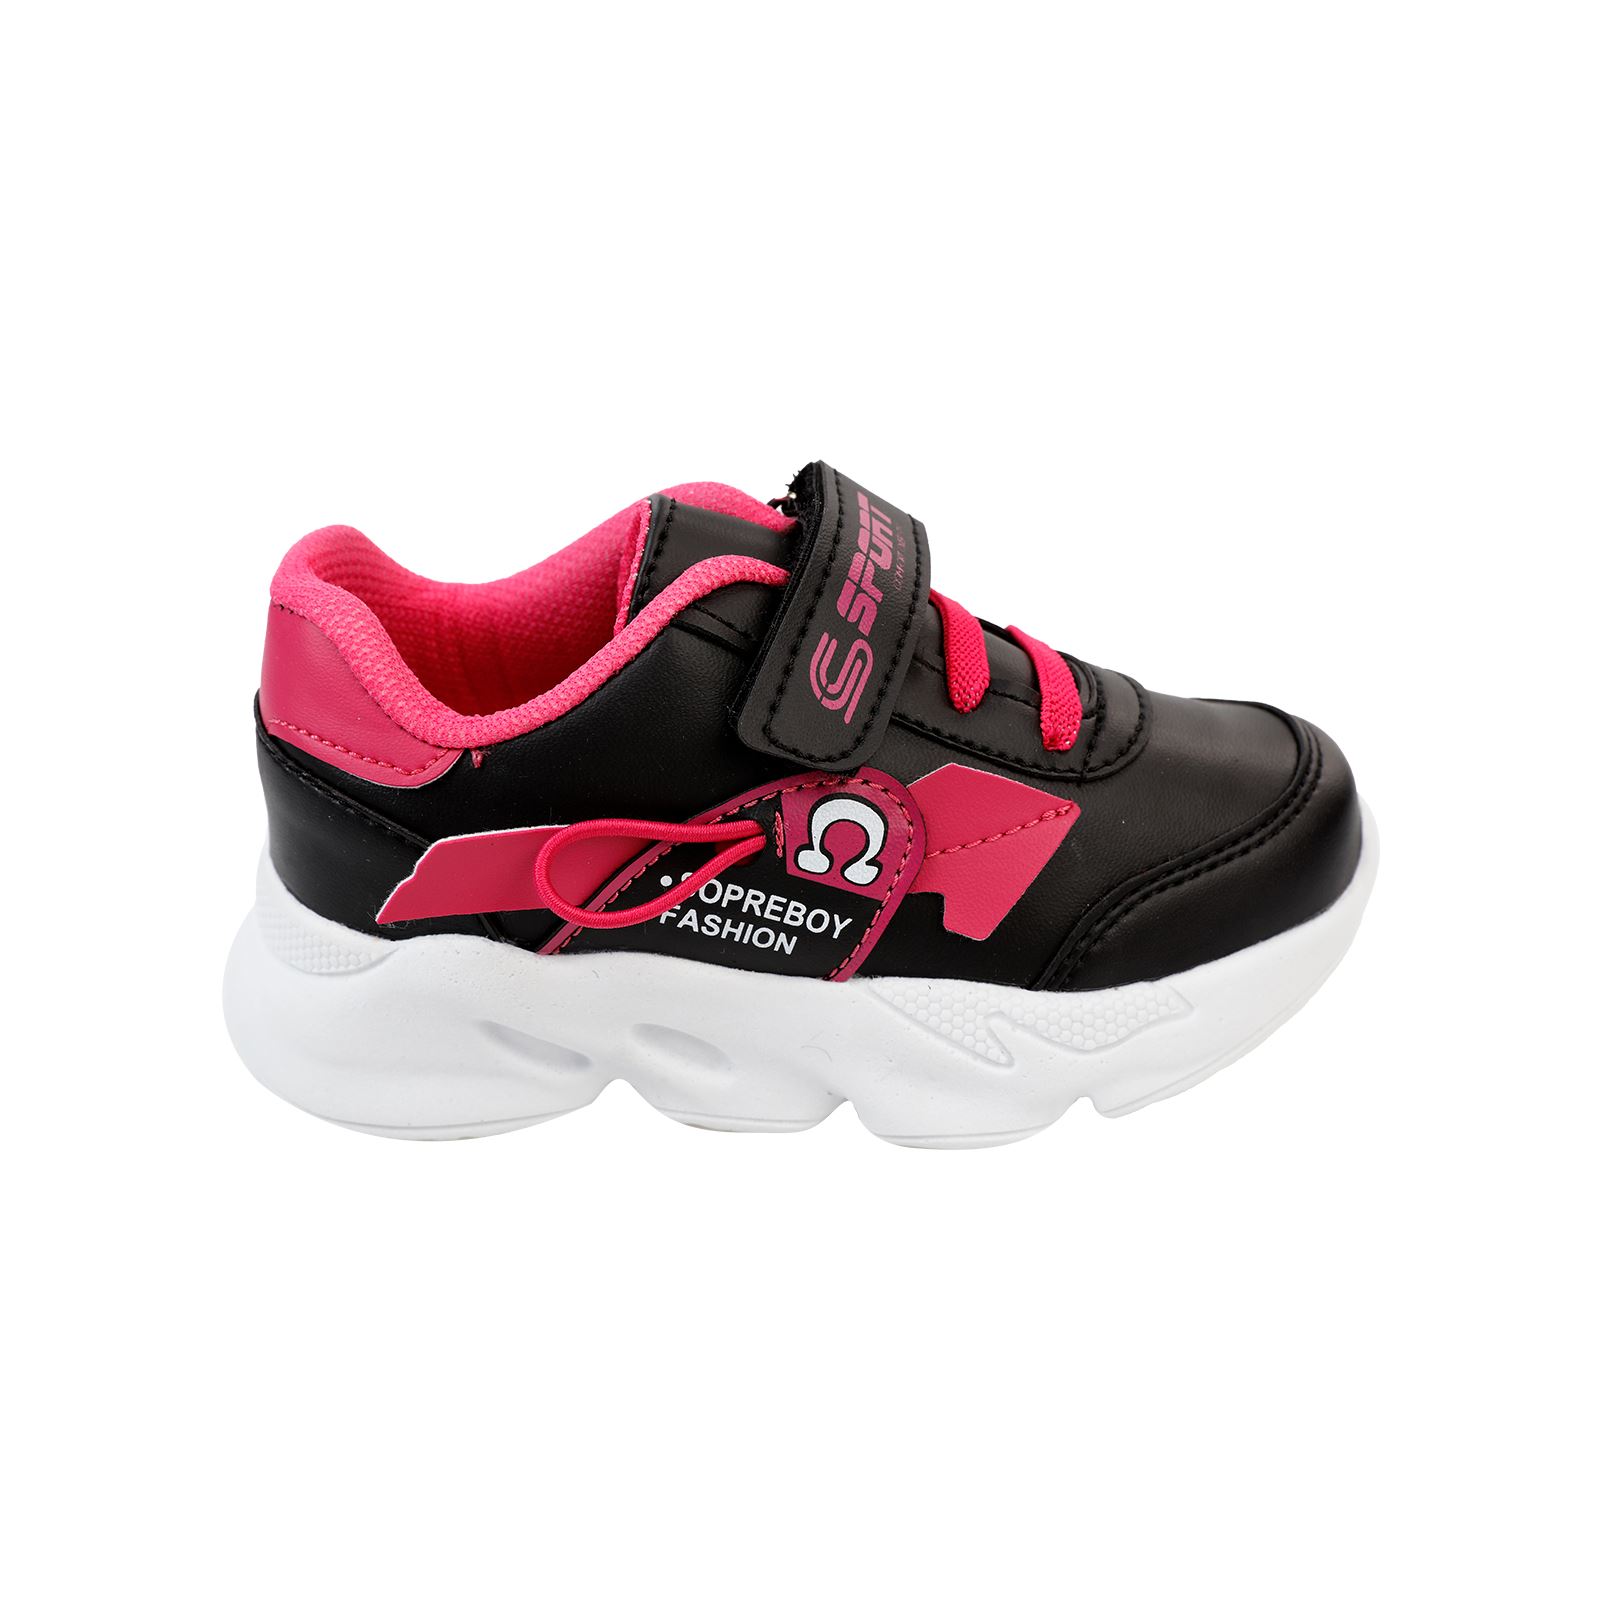 Sport Kız Çocuk Spor Ayakkabı 30-35 Numara Siyah-Fuşya